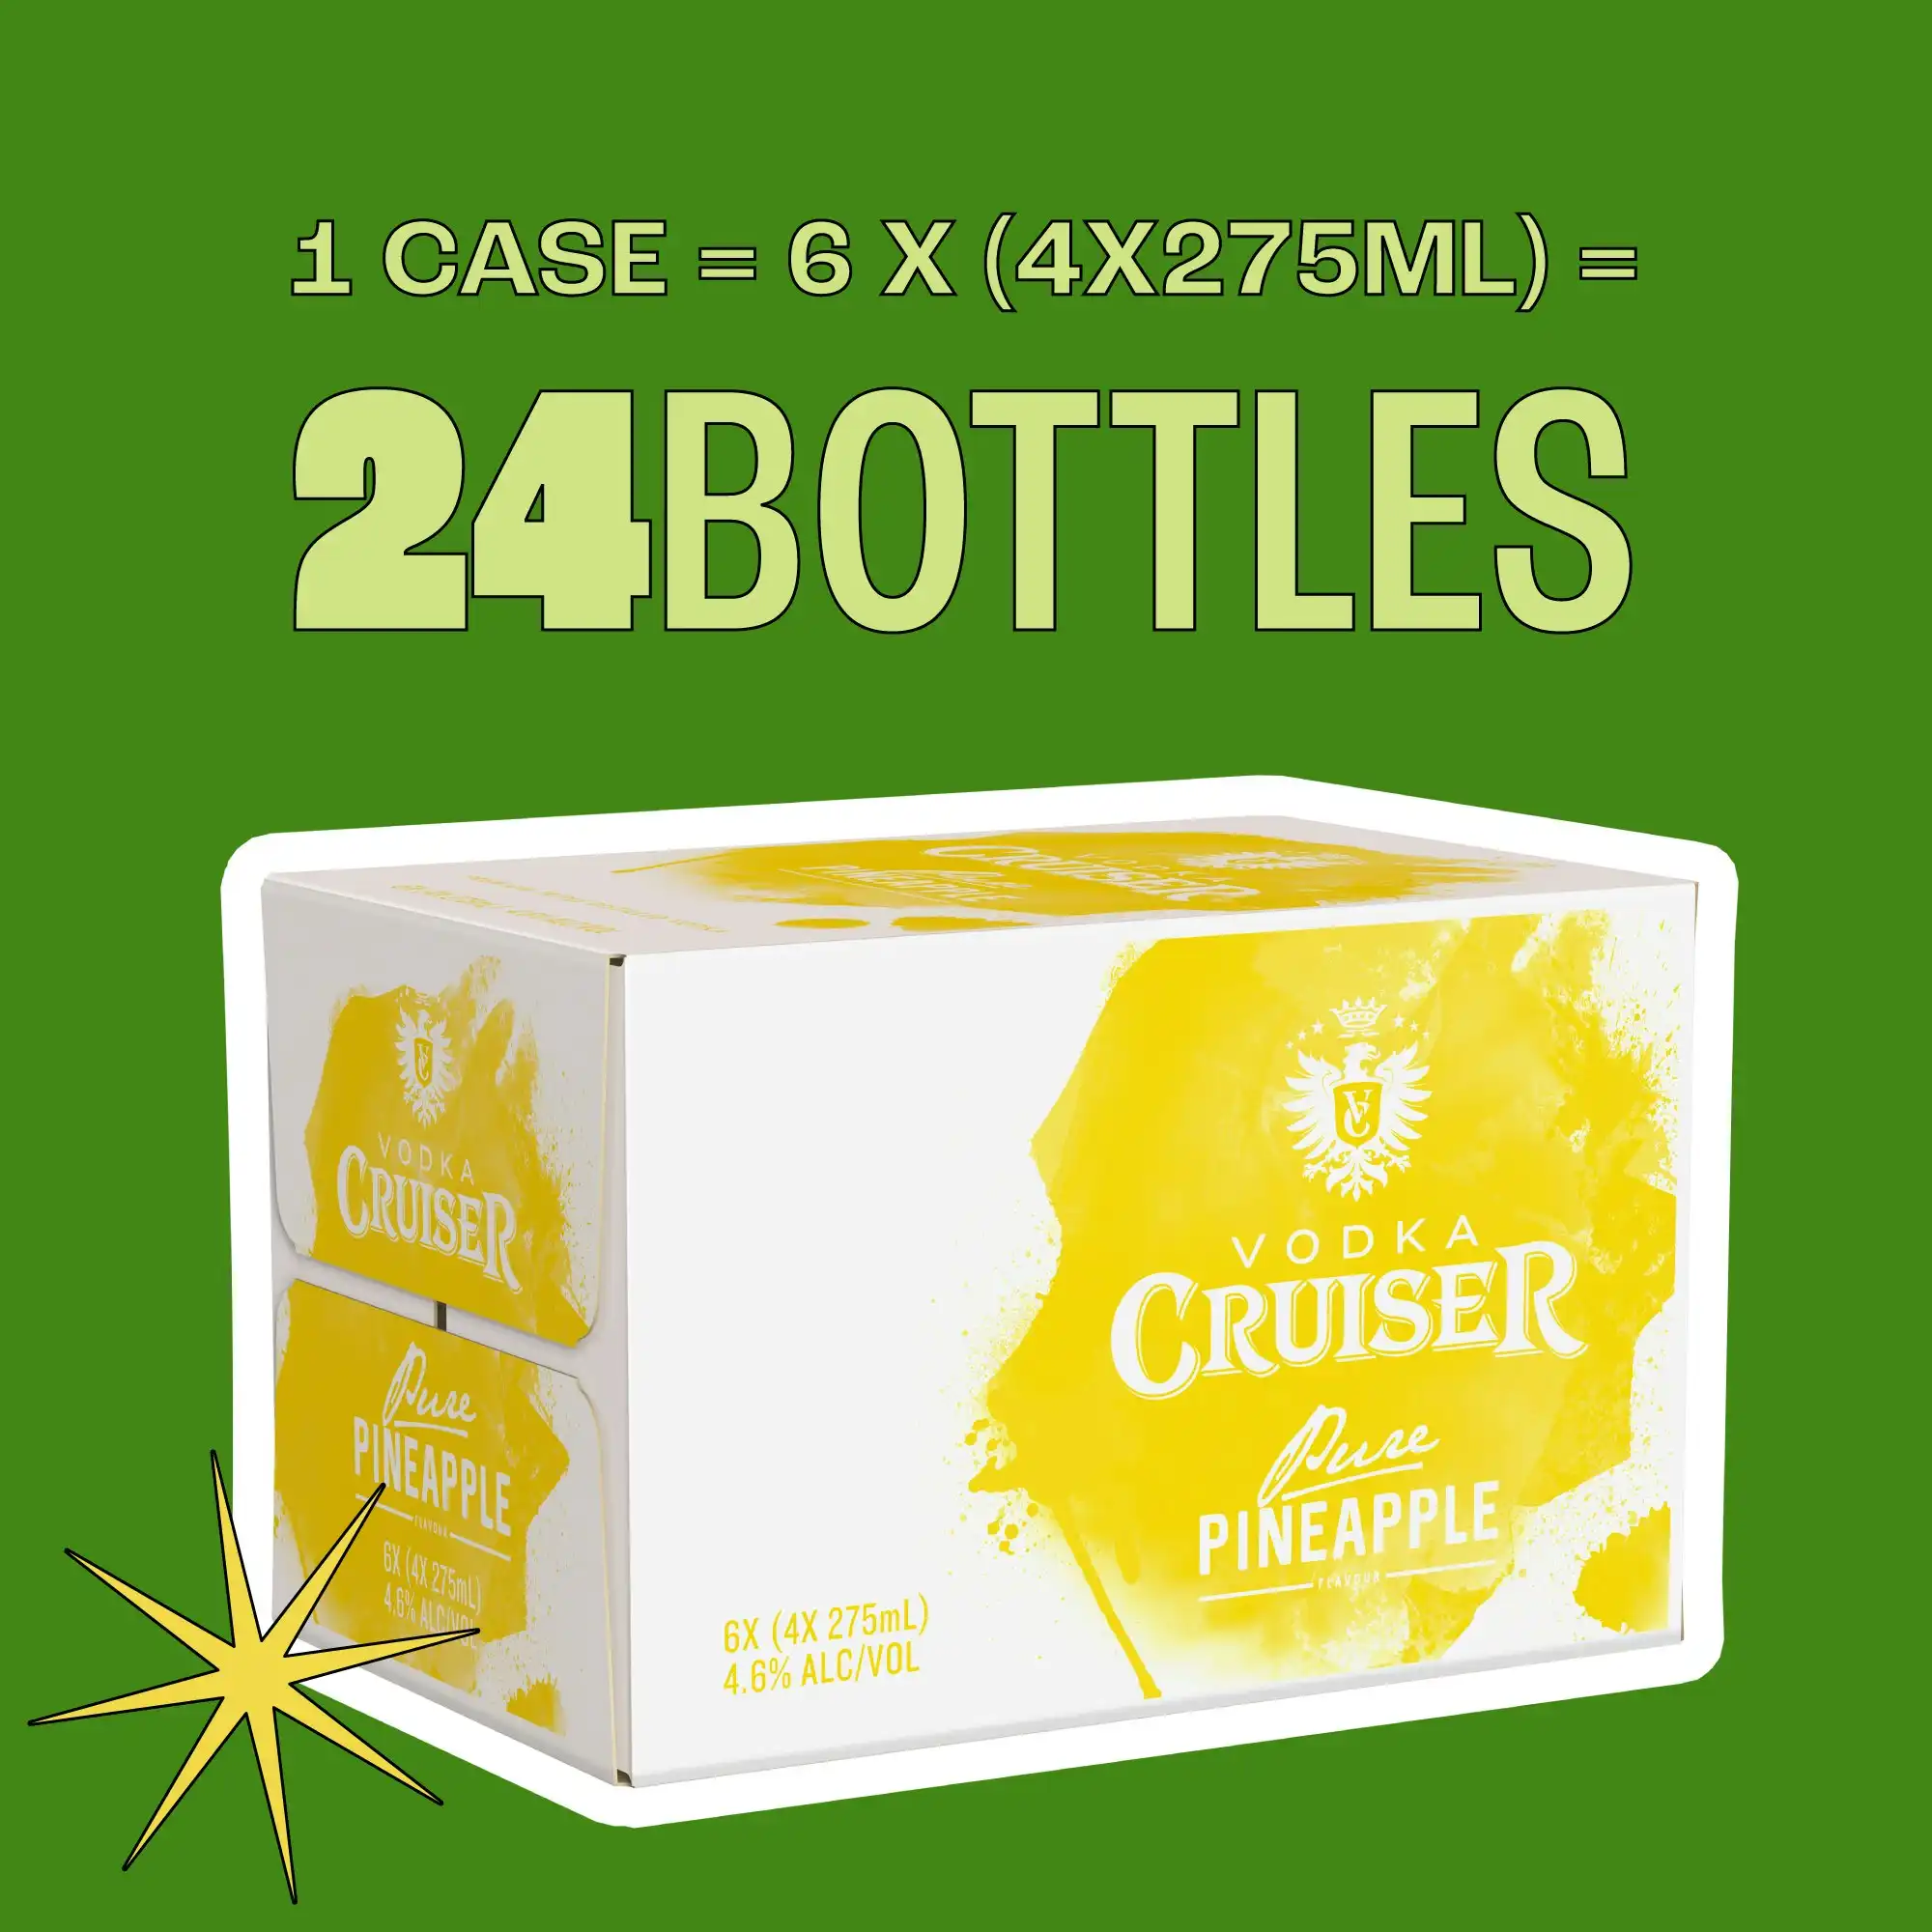 Vodka Cruiser Pure Pineapple 4.6% 24 x 275mL Bottles